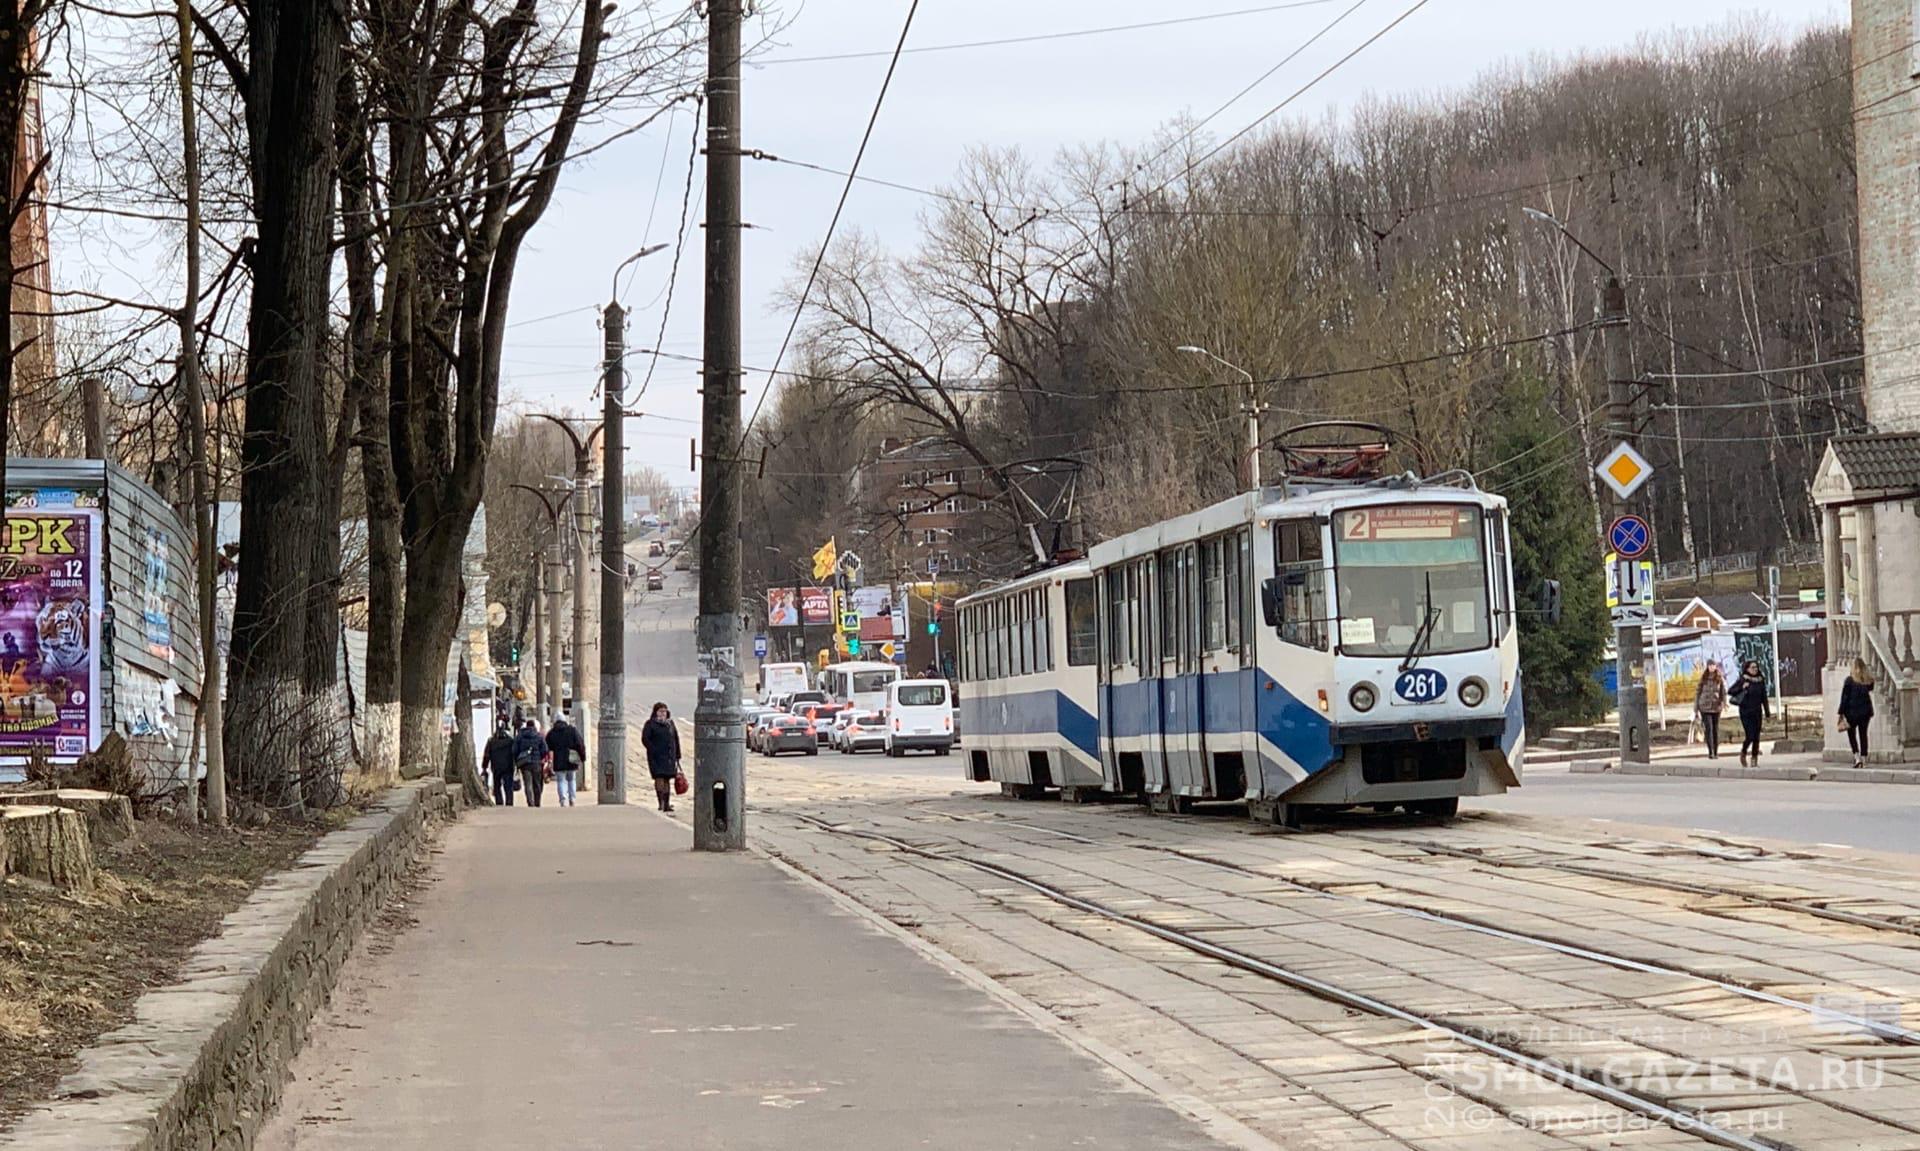 В Смоленске возобновится трамвайное движение по улице Николаева